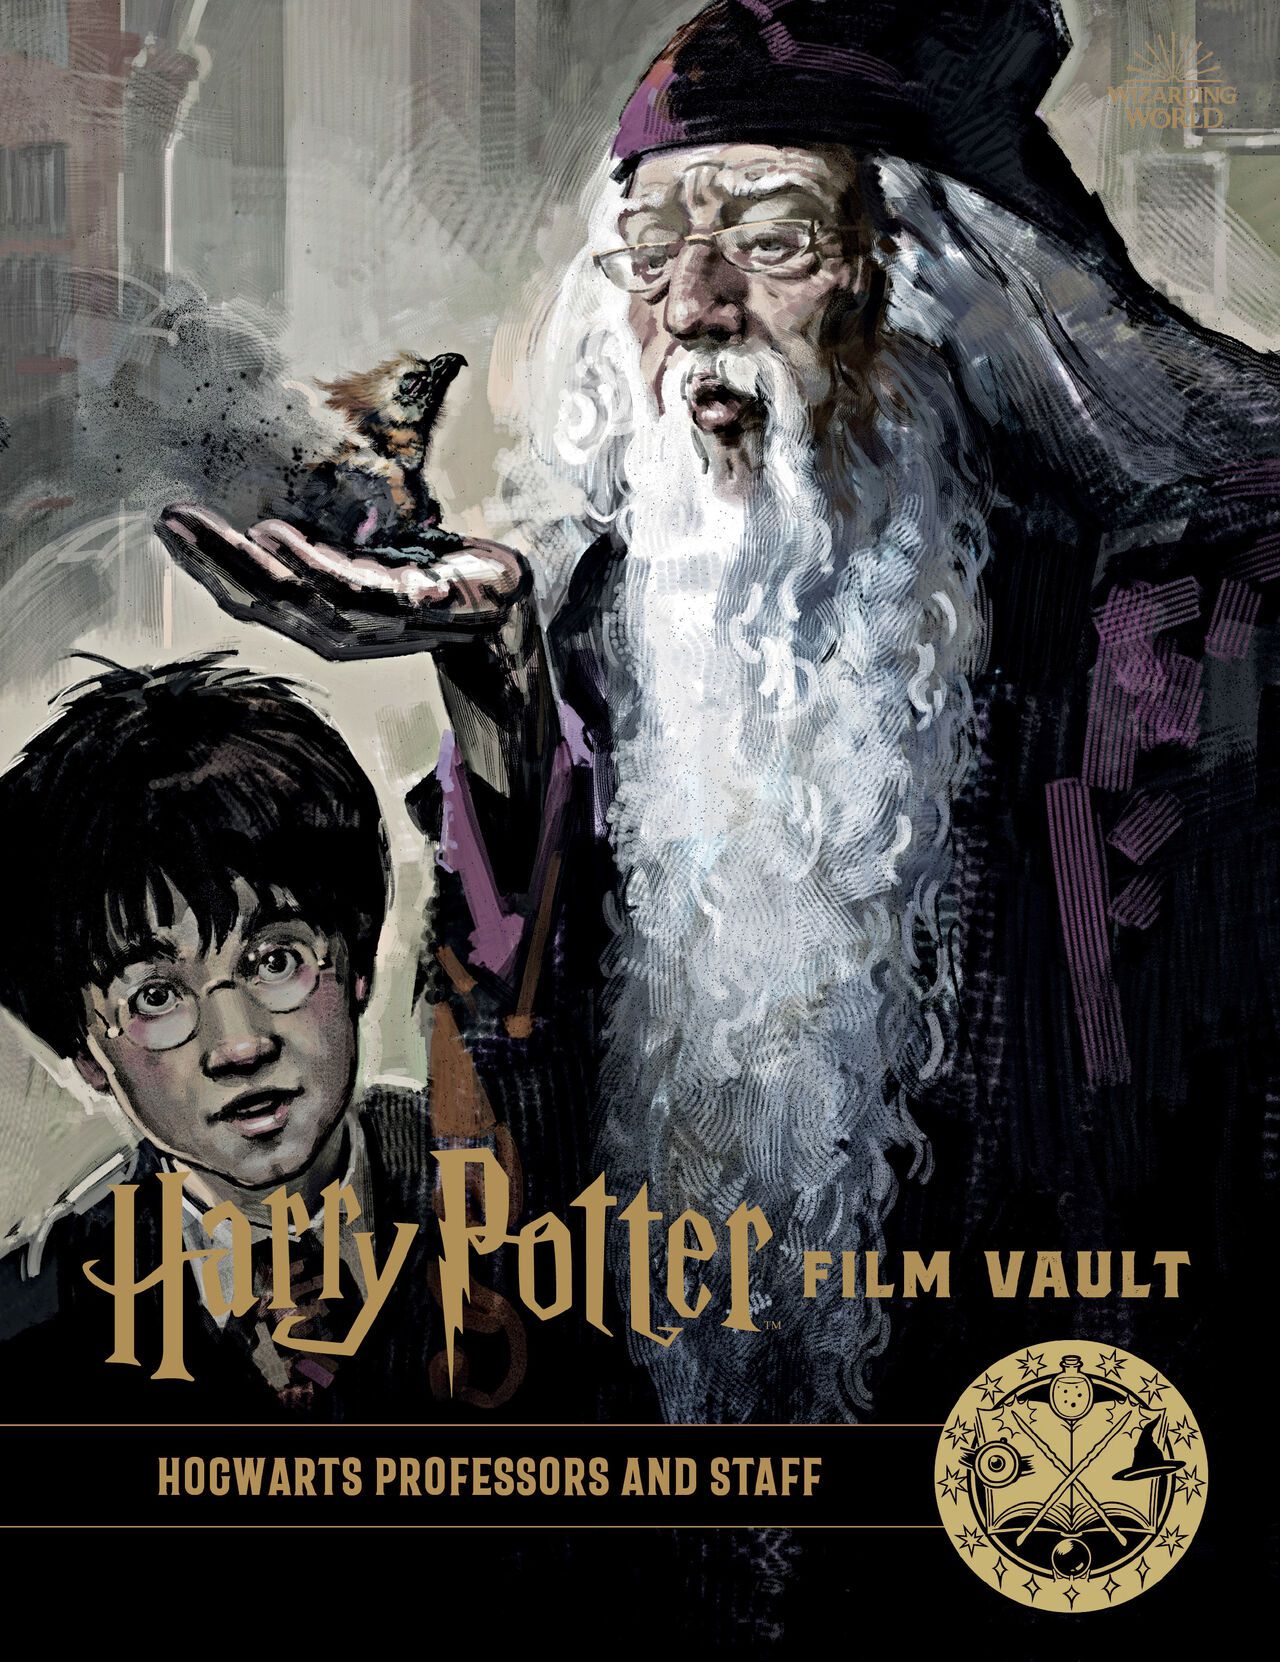 Harry Potter - Film Vault v11 - Hogwarts Professors and Staff 1